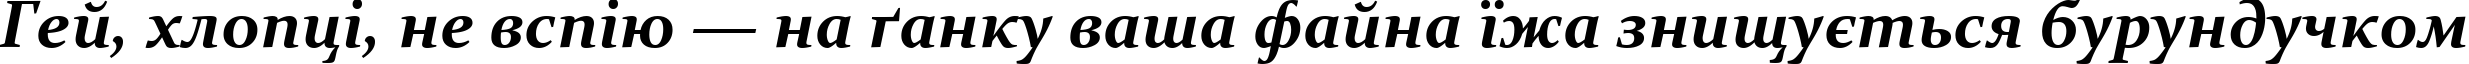 Пример написания шрифтом Constantia Bold Italic текста на украинском